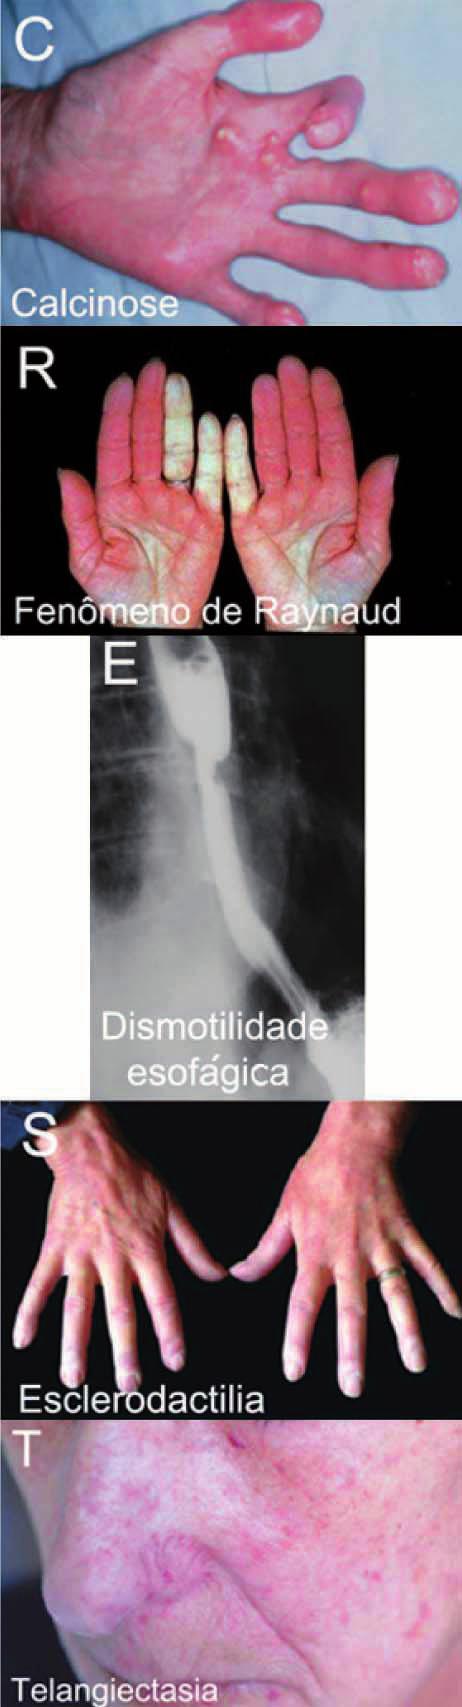 esclerose sistêmica 319 Formas clínicas Quadro pulmonar mais associado Anticorpo mais associado Prognóstico ES difusa Fibrose intersticial pulmonar Antitopoisomerase I Reservado, associado à